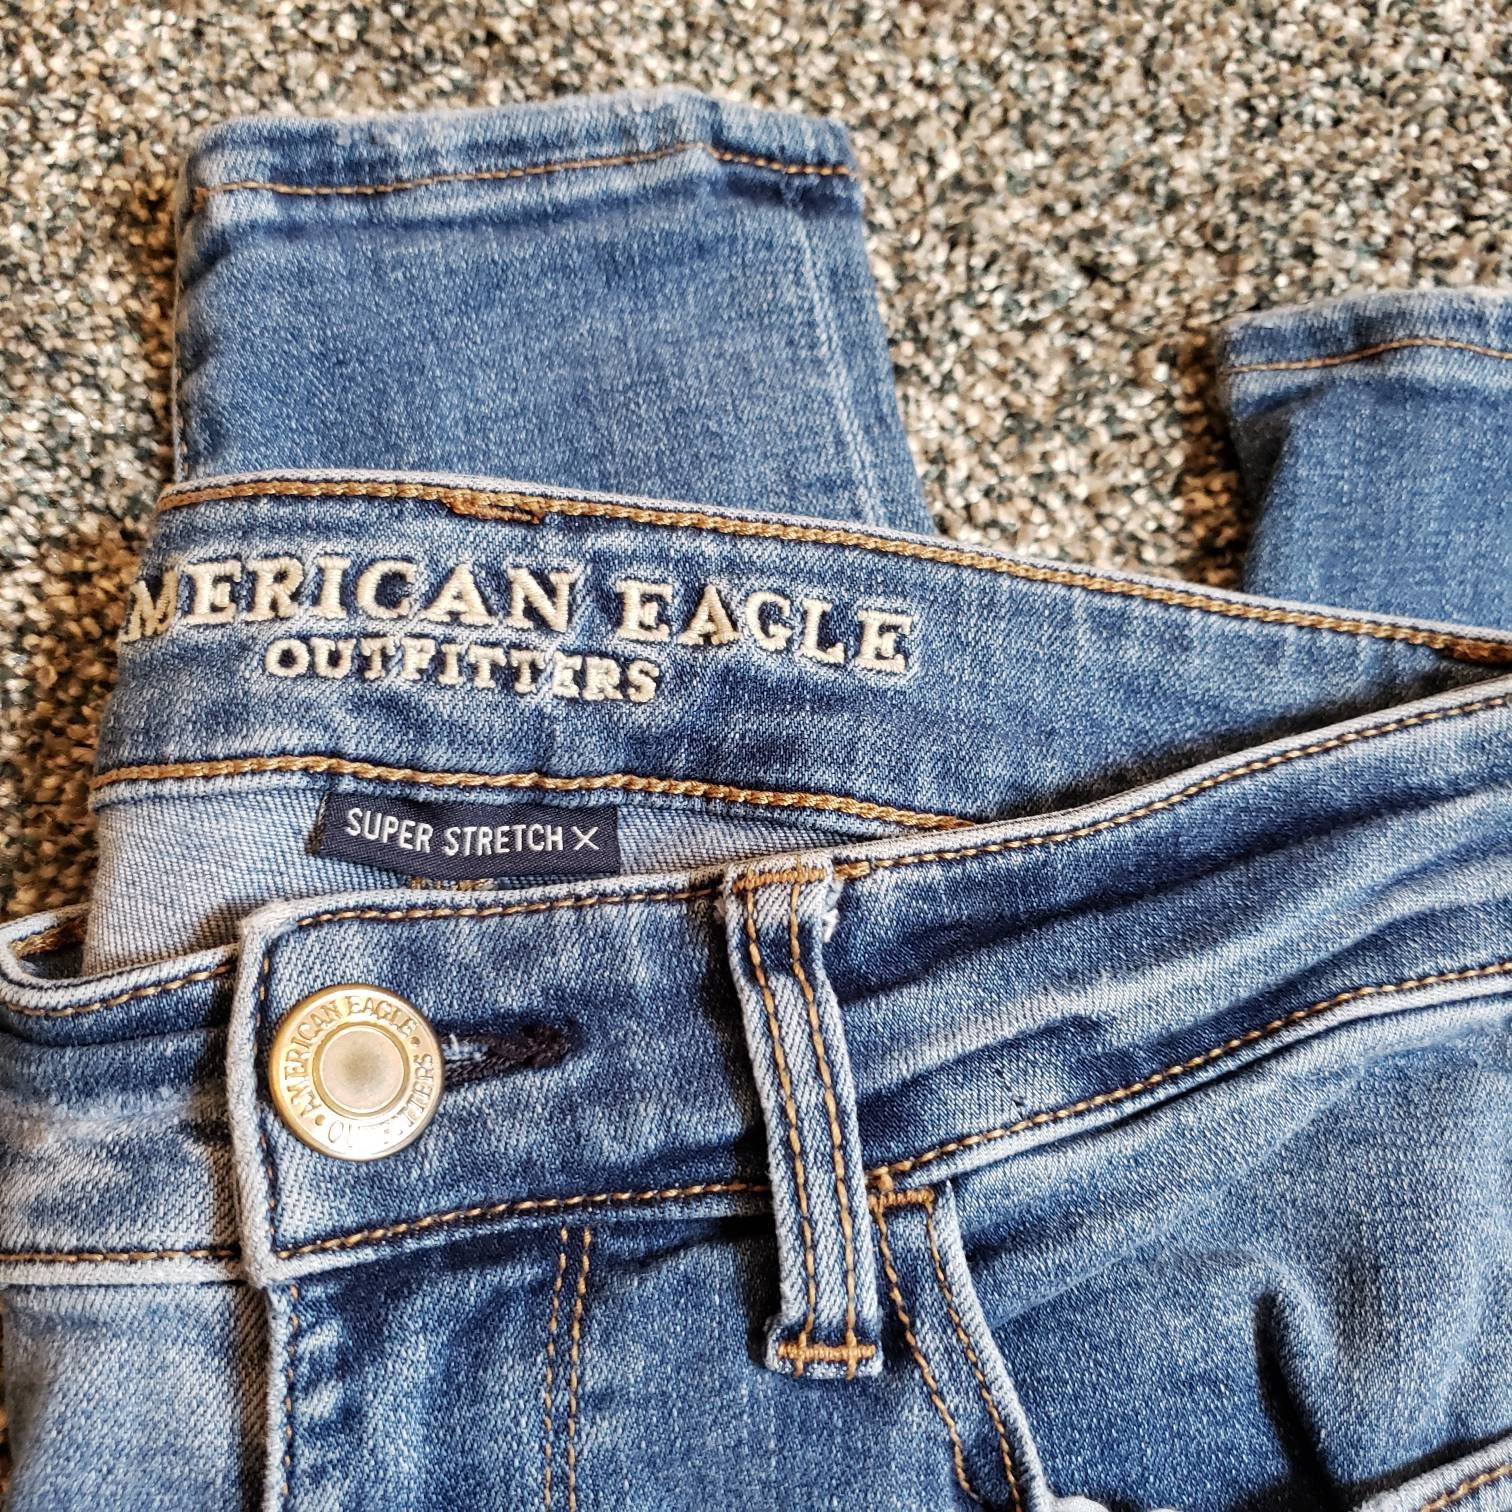 American Eagle, Jeans, American Eagle Jeans, Jeggins, Super Stretch, Size  0, Designer Jeans, Vintage Jeans, Junior Jeans, Girls J -  Canada